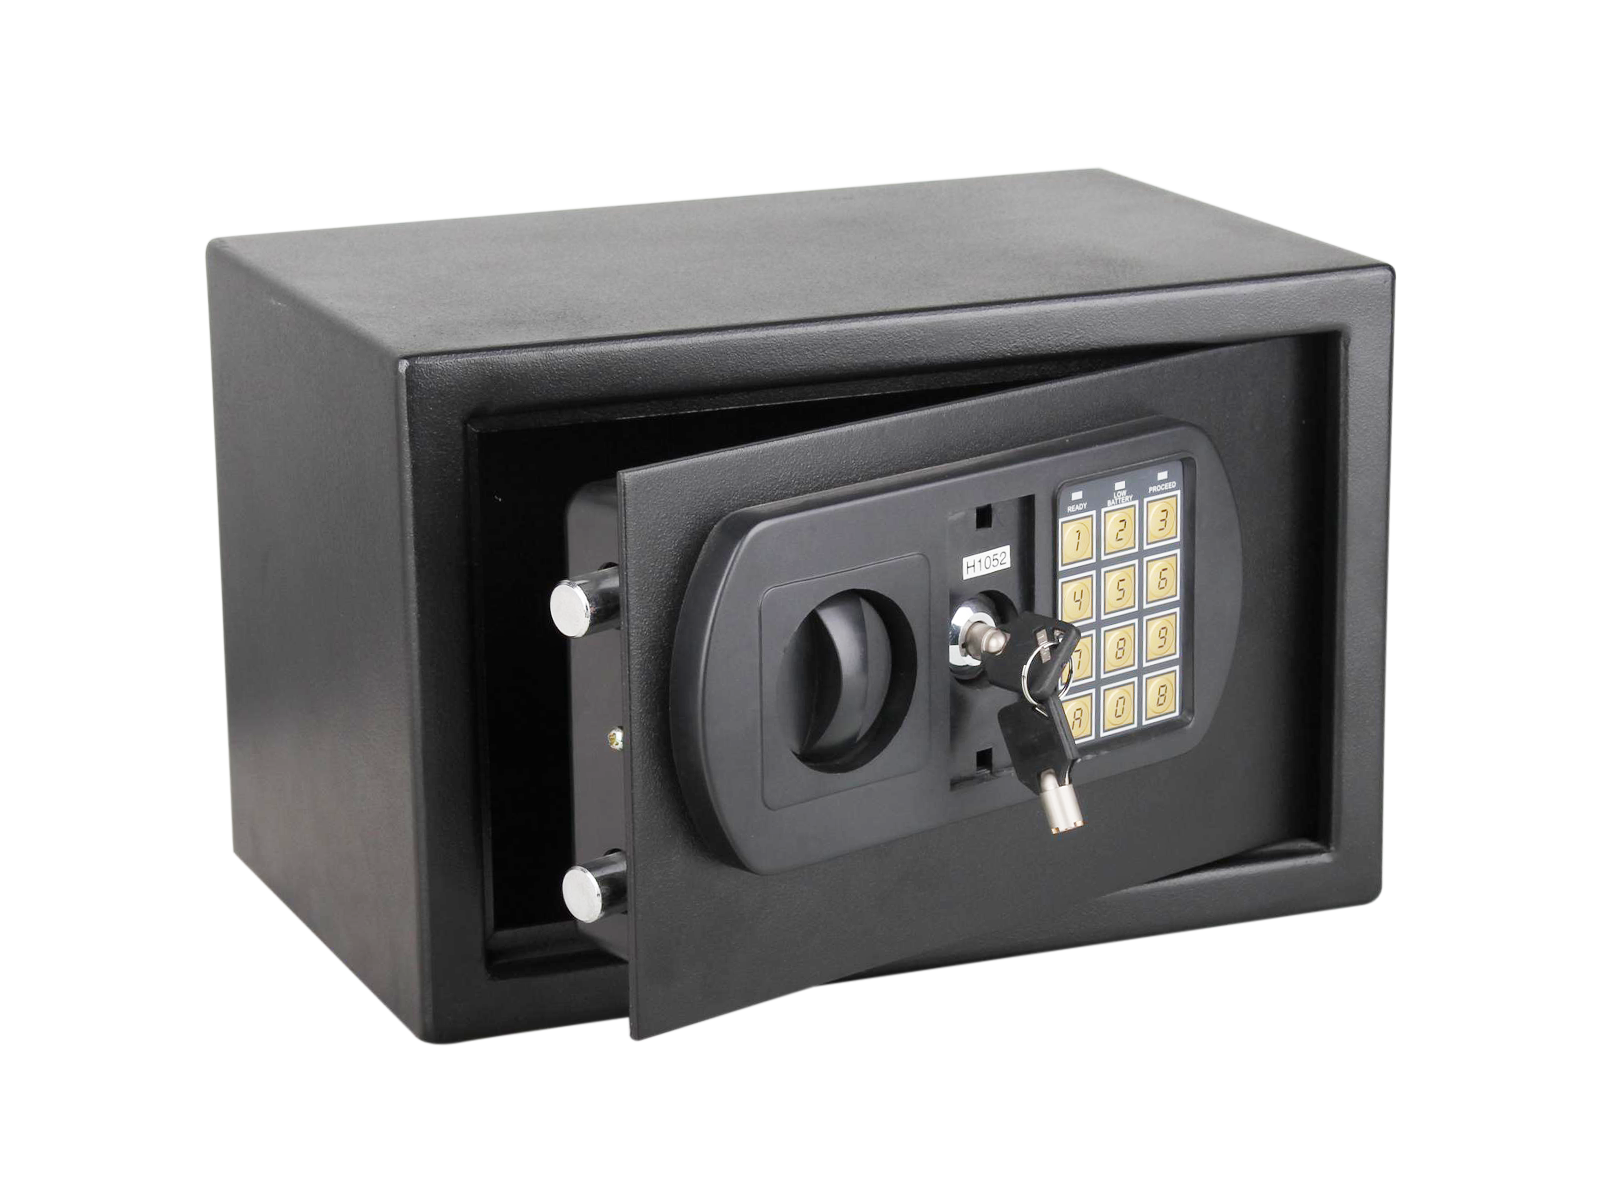 Teclado cerradura electrónica caja fuerte personal para el hogar por dinero